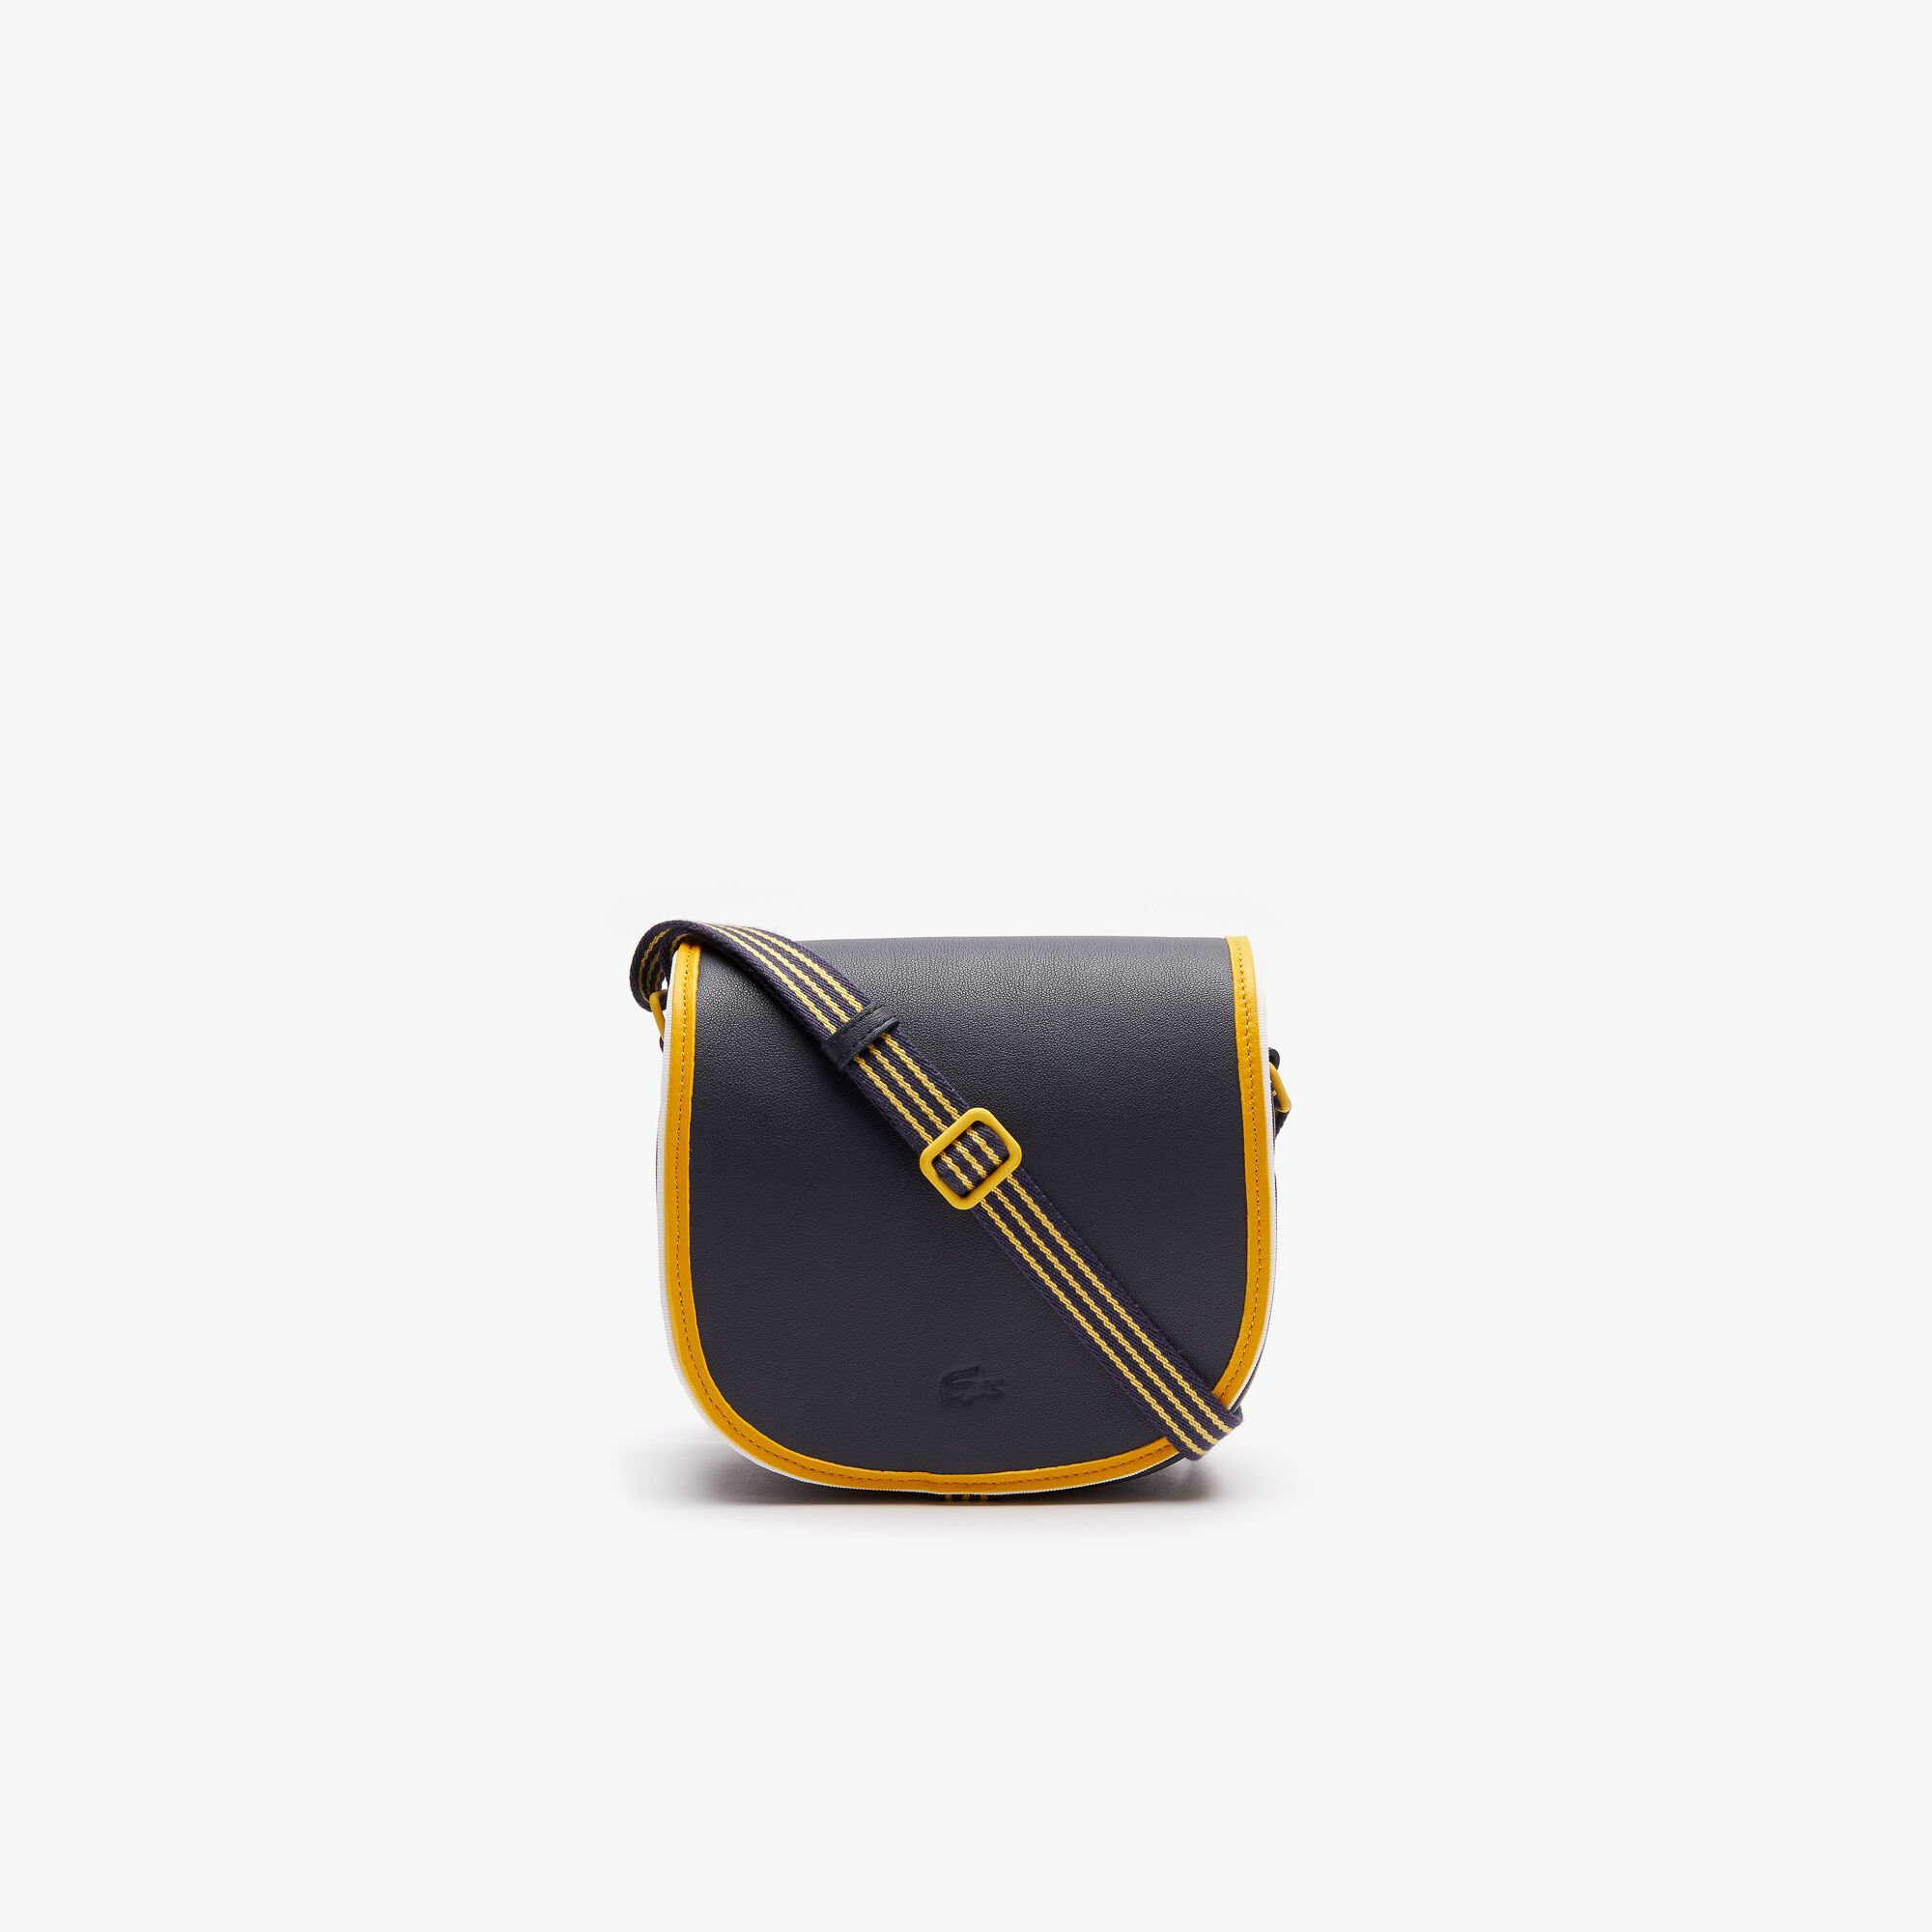 حقيبة هوبو صغيرة مع شريط بلون مختلف من مجموعة Court Line للنساء